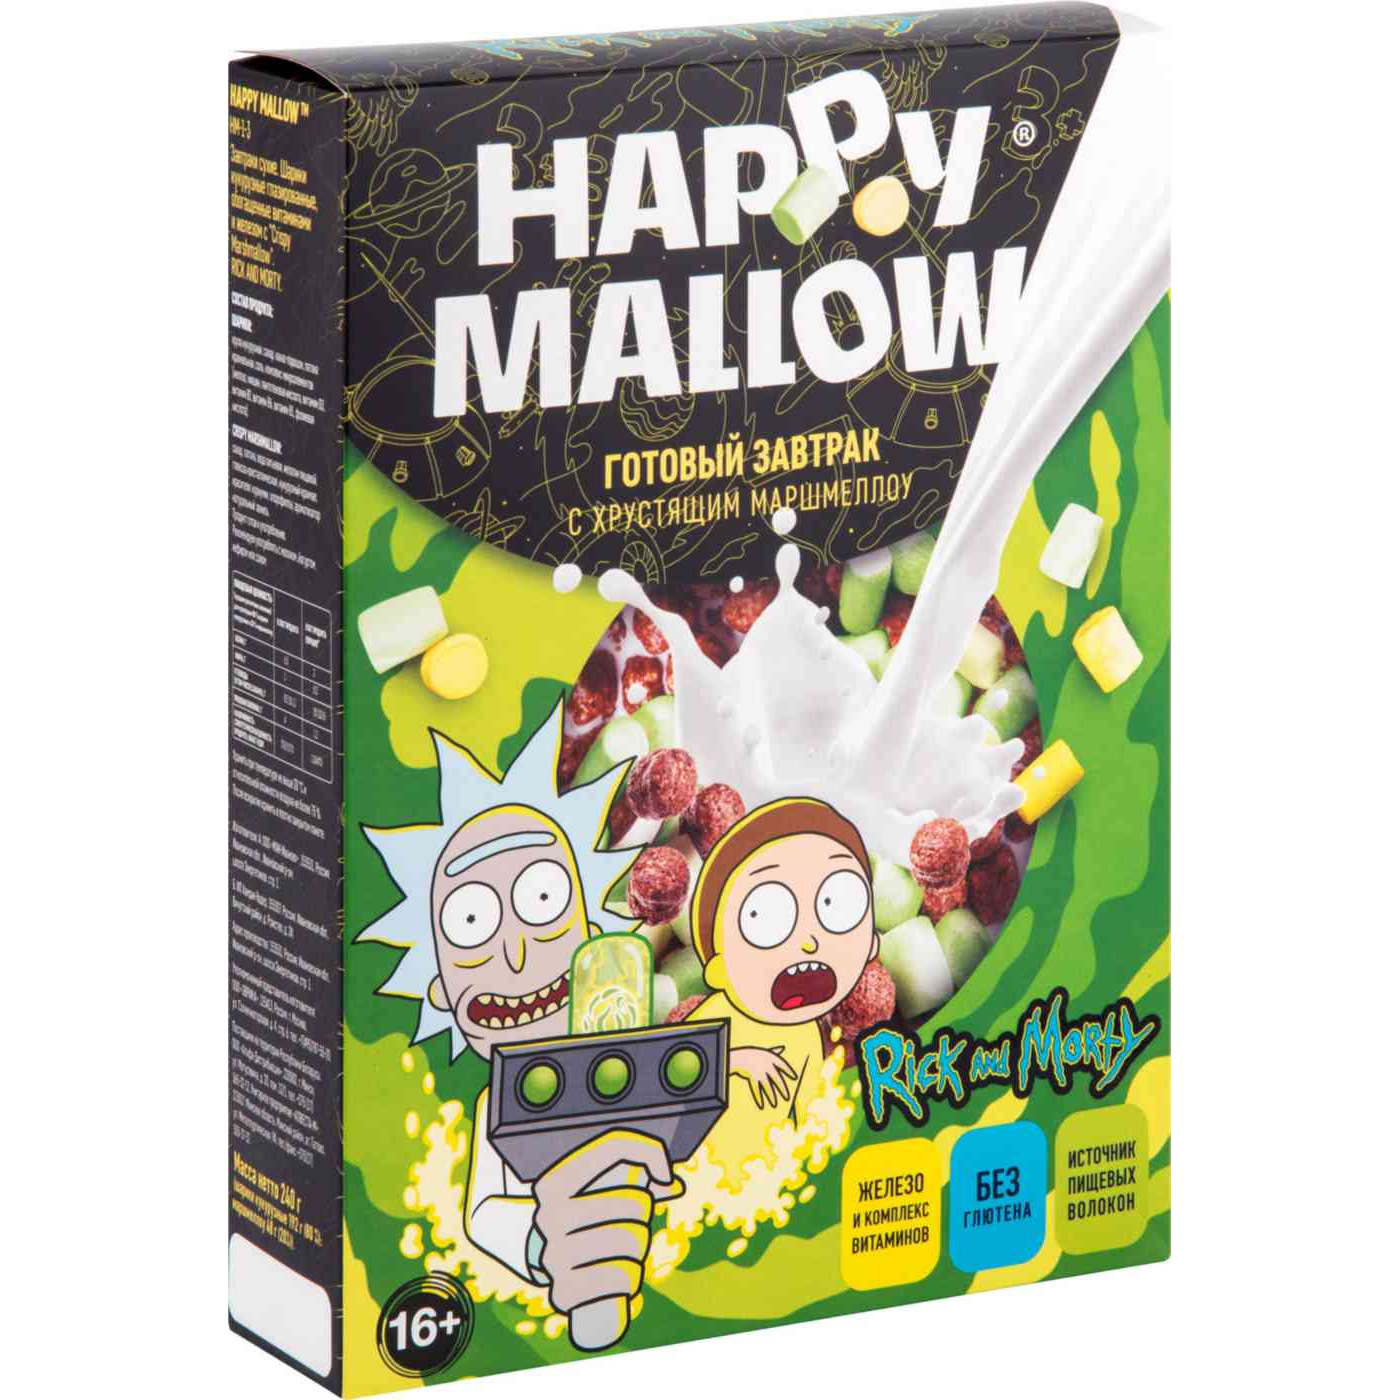 Готовый завтрак Happy Mallow Rick and Morty с хрустящим маршмеллоу 240 г